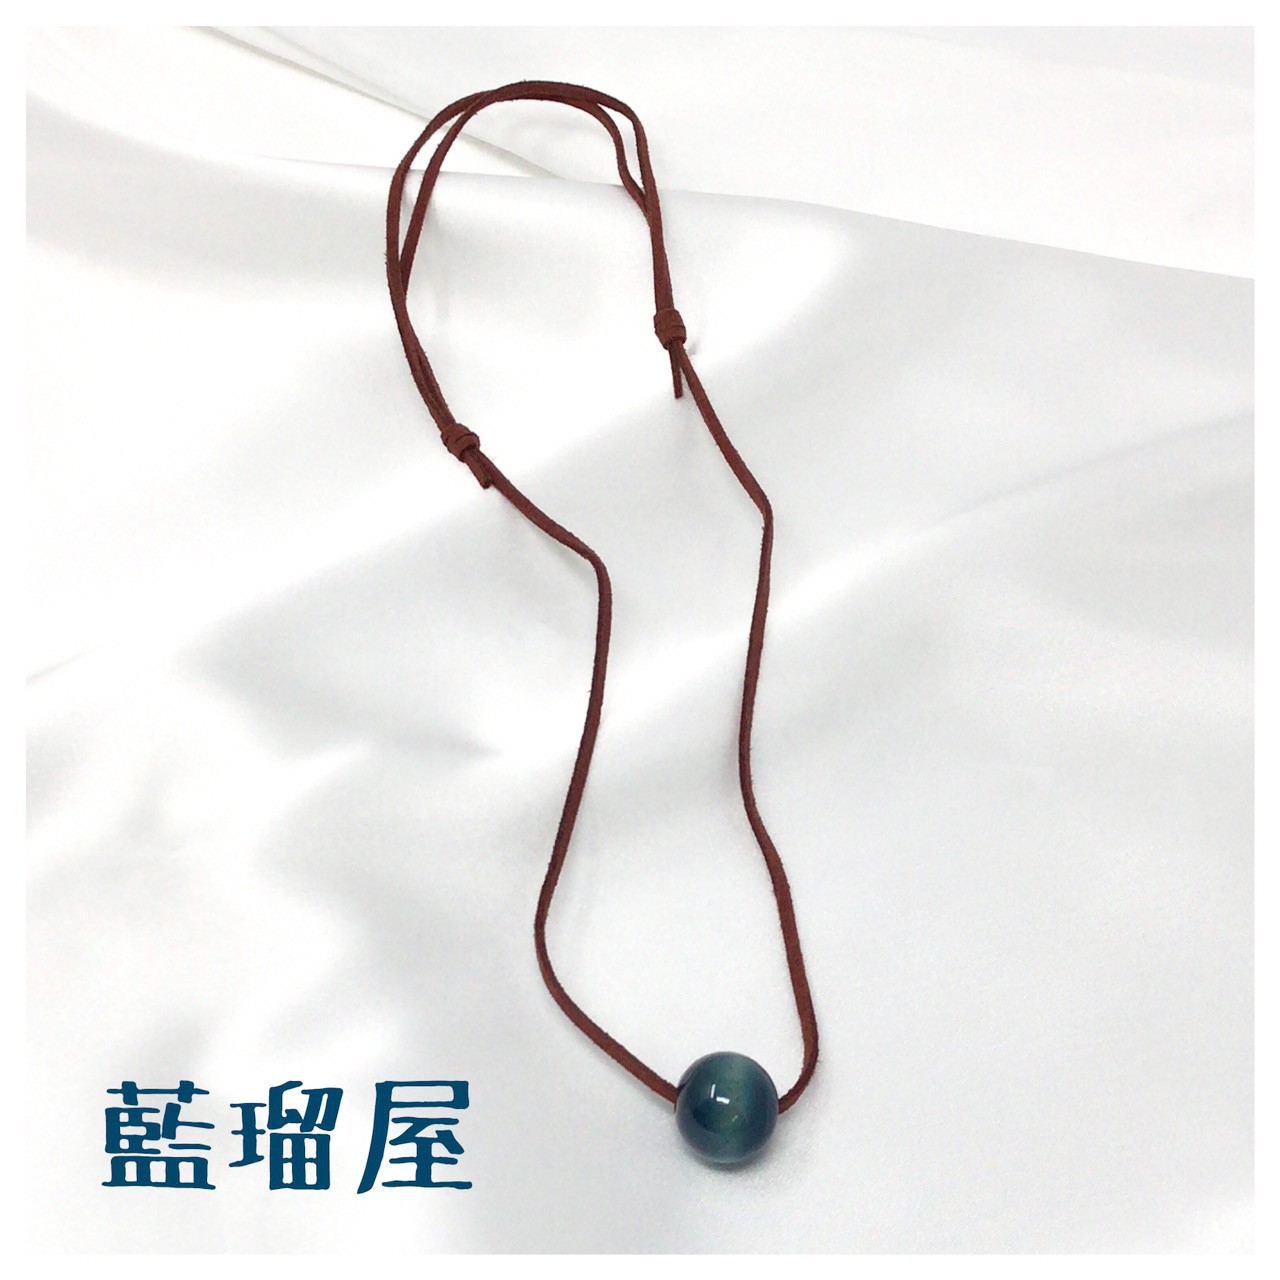 藍染め木玉 1連ネックレス Iichi ハンドメイド クラフト作品 手仕事品の通販